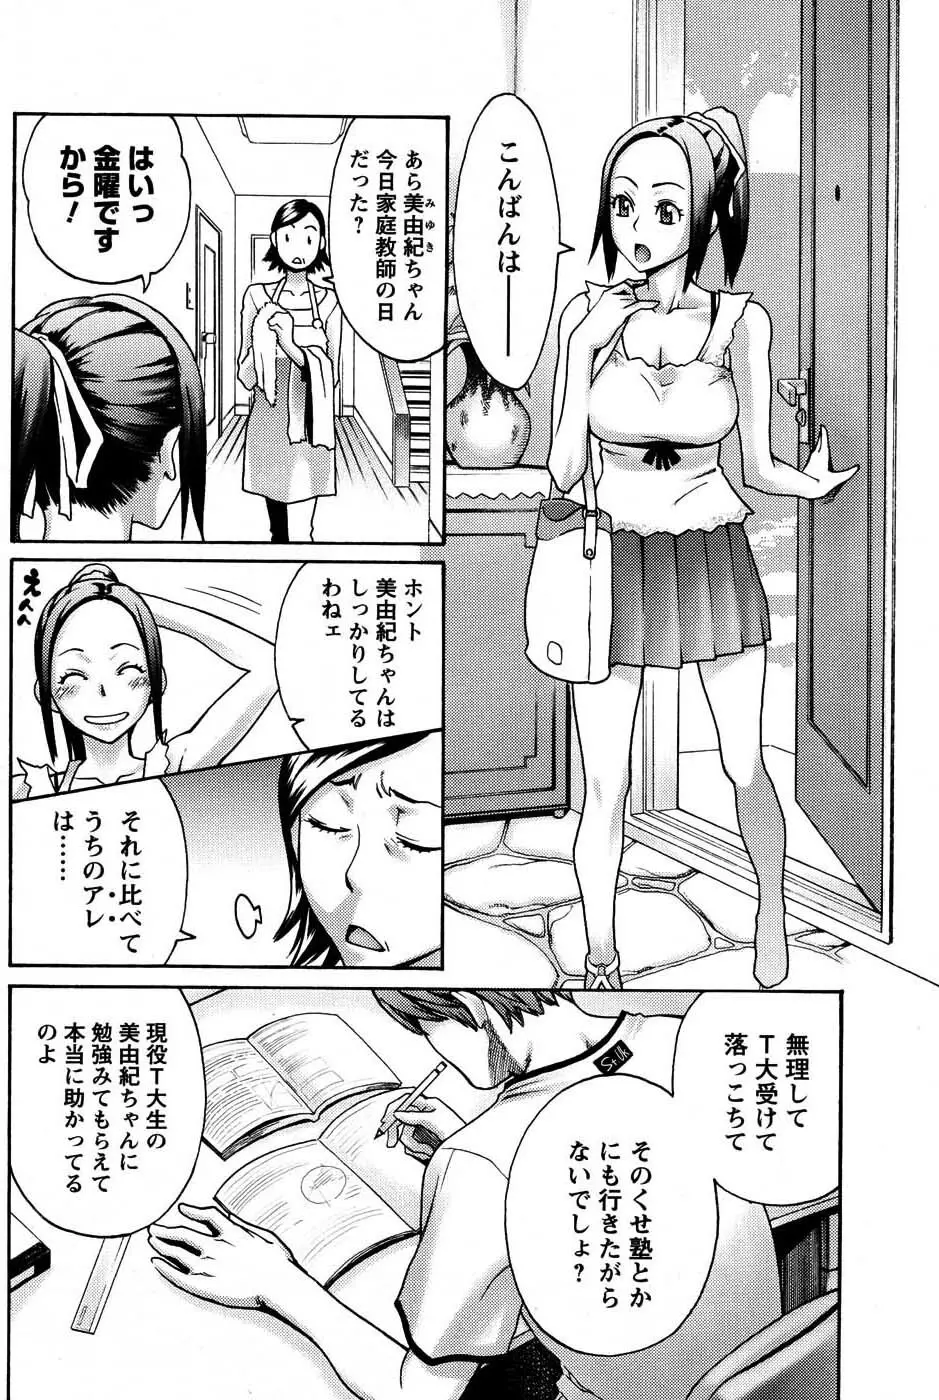 メンズヤングスペシャルIKAZUCHI雷 Vol.3 2007年9月号増刊 221ページ